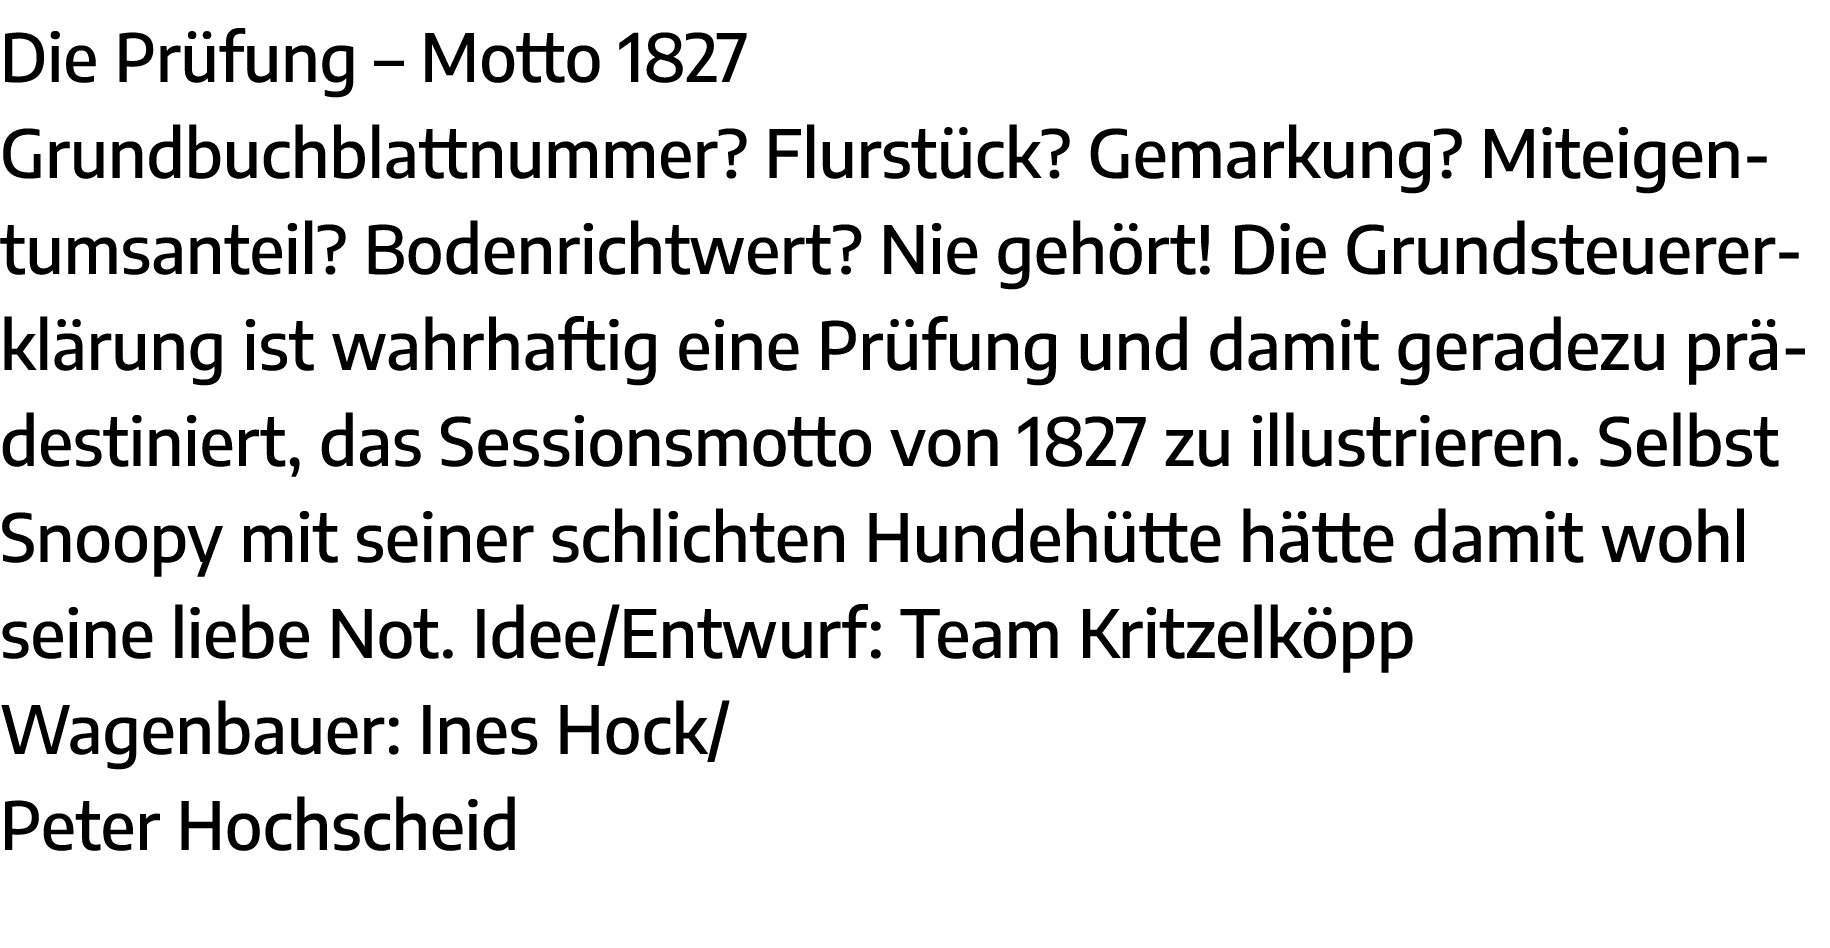 Die Prüfung   Motto 1827 Grundbuchblattnummer  Flurstück  Gemarkung  Miteigentumsanteil  Bodenrichtwert  Nie gehört     